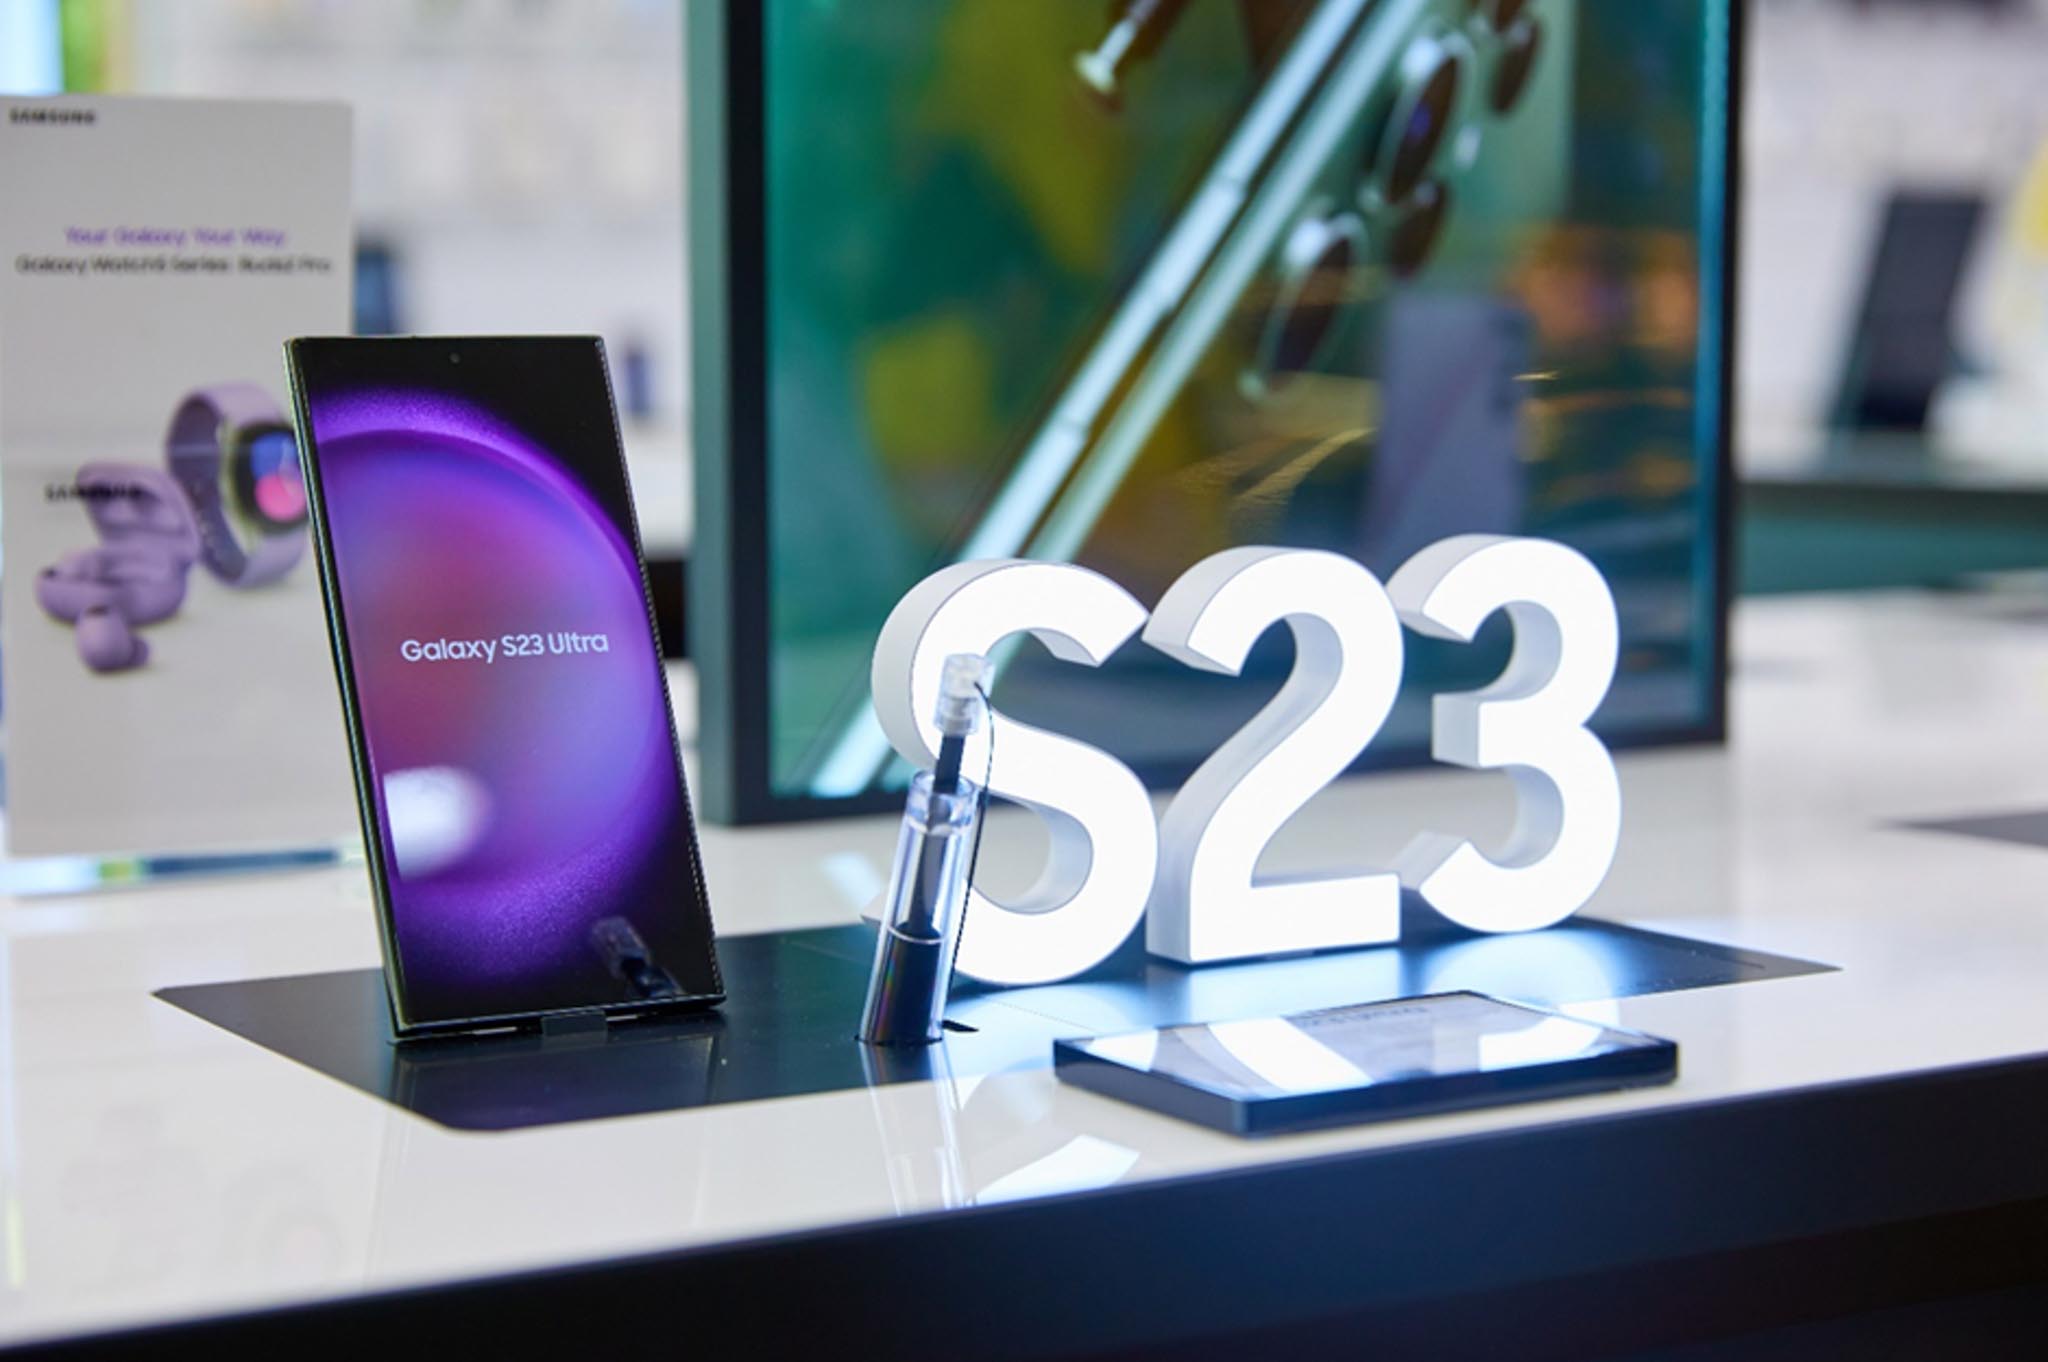 Mở Bán Sớm Galaxy S23 Series: Samsung Cùng Thế Giới Di Động Ra Mắt Thương Hiệu Chuỗi Bán Lẻ GalaxyZone